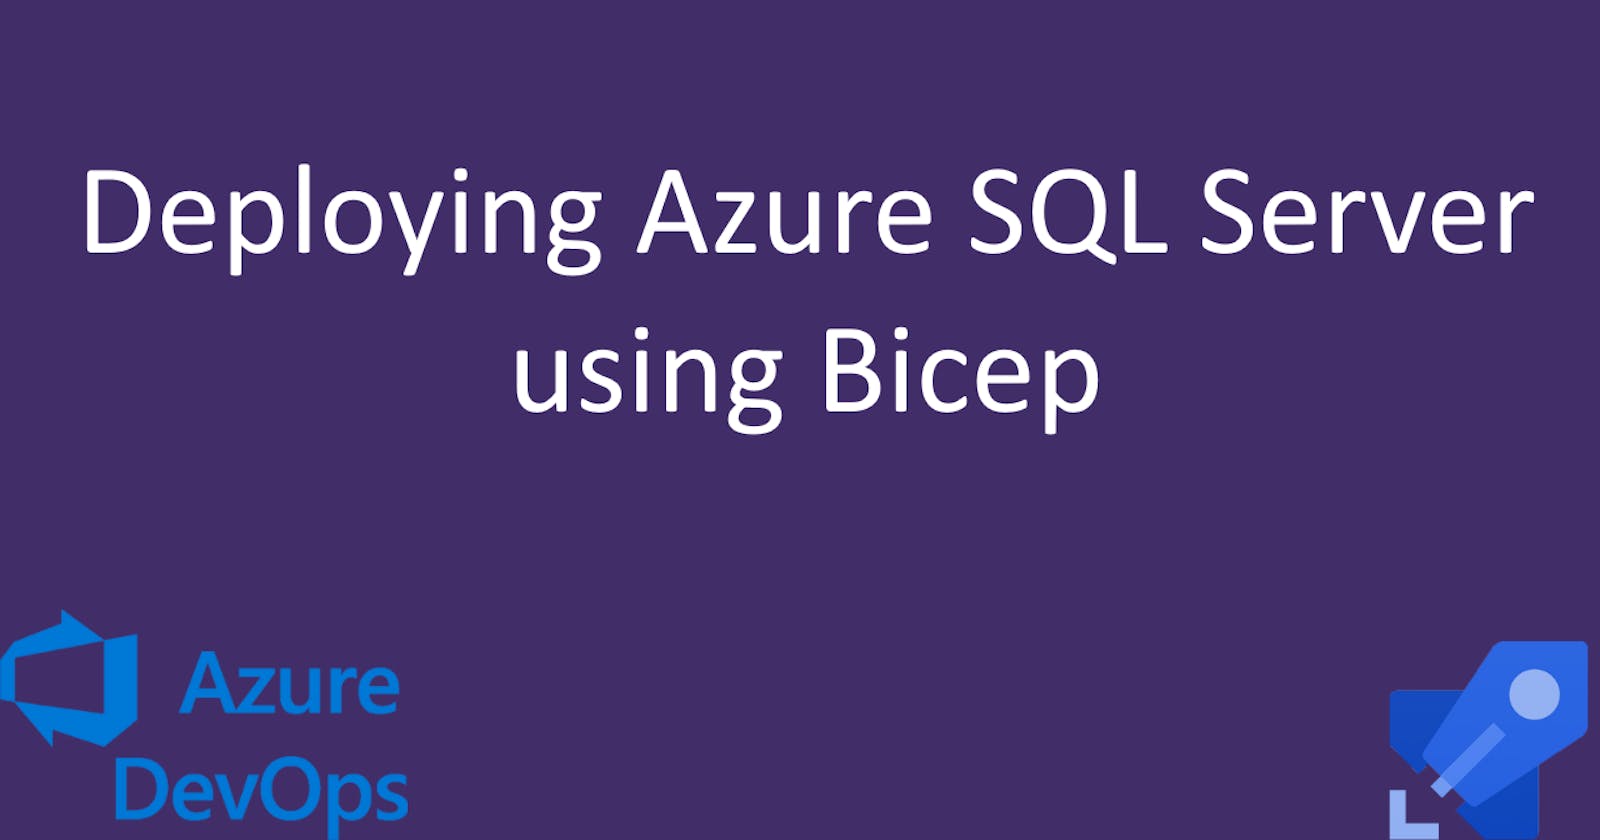 Deploying Azure SQL Server using Bicep